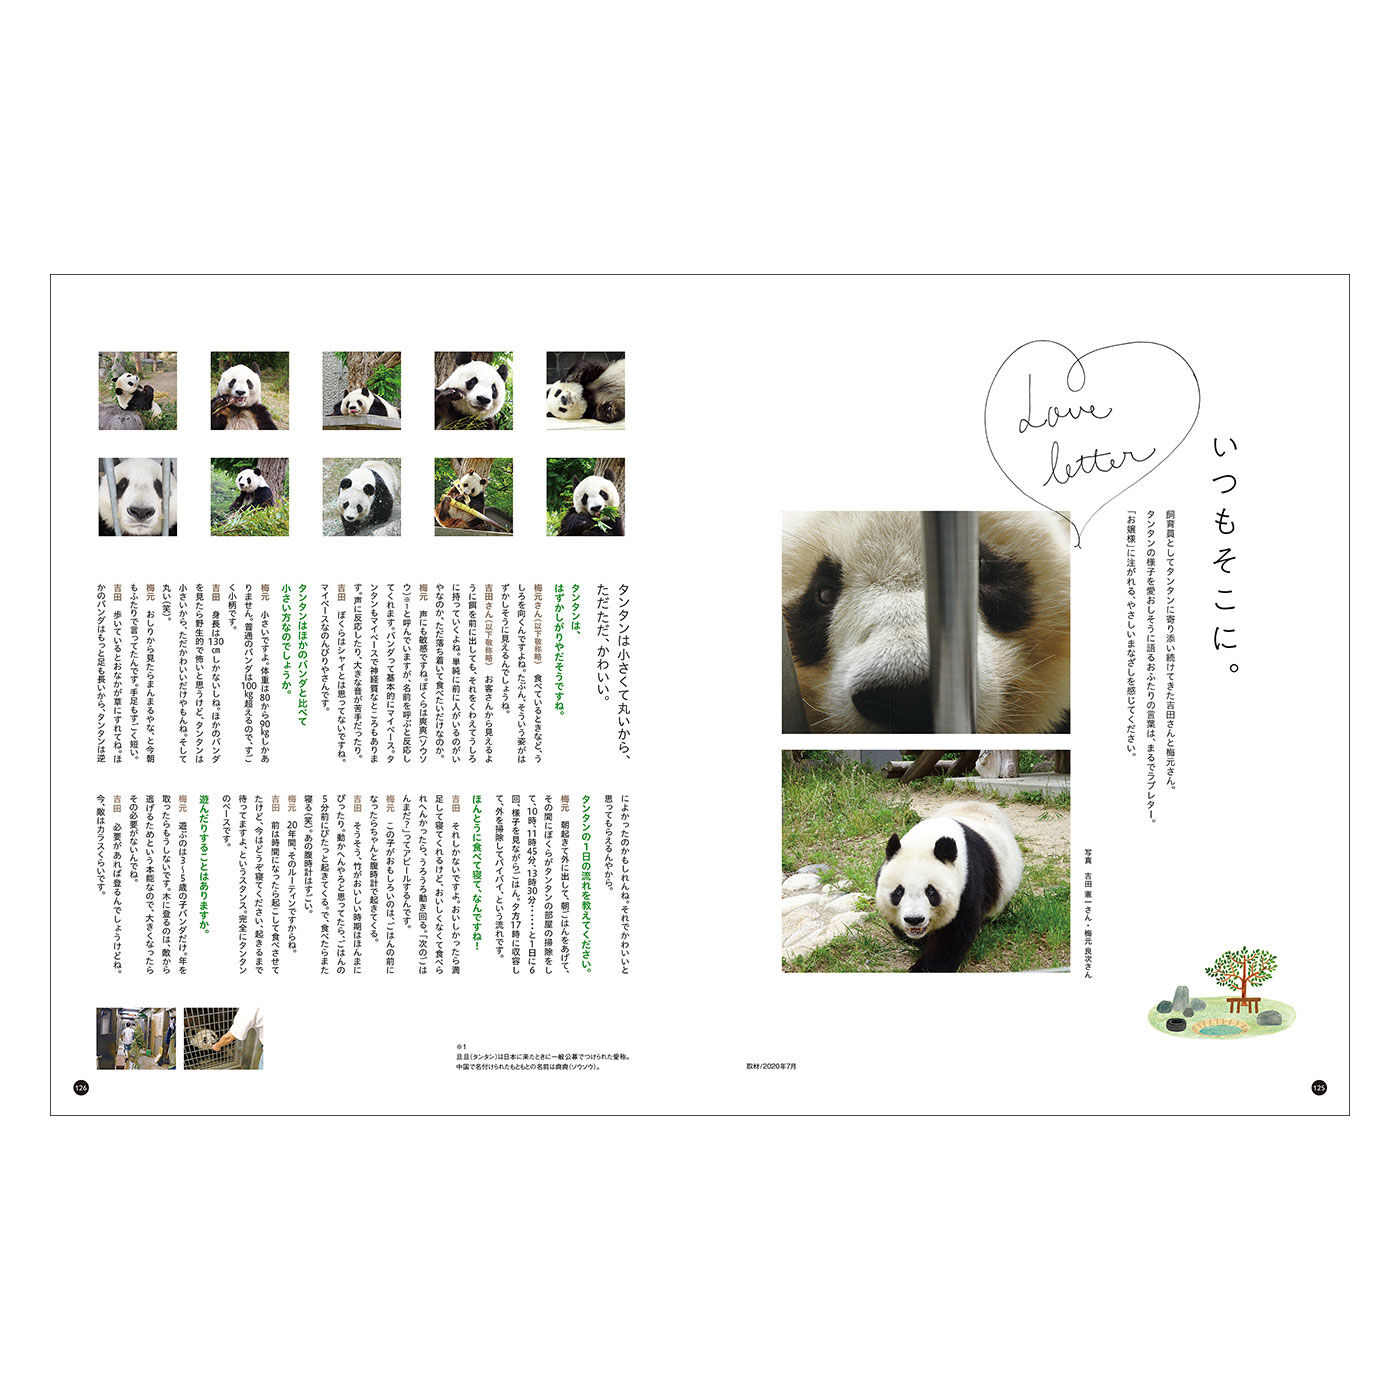 YOU+MORE!|YOU+MORE!　写真集『神戸市立王子動物園のシャイなパンダ　タンタン』|飼育員さんにタンタンについてお聞きしたインタビューページはまるでラブレターのよう。